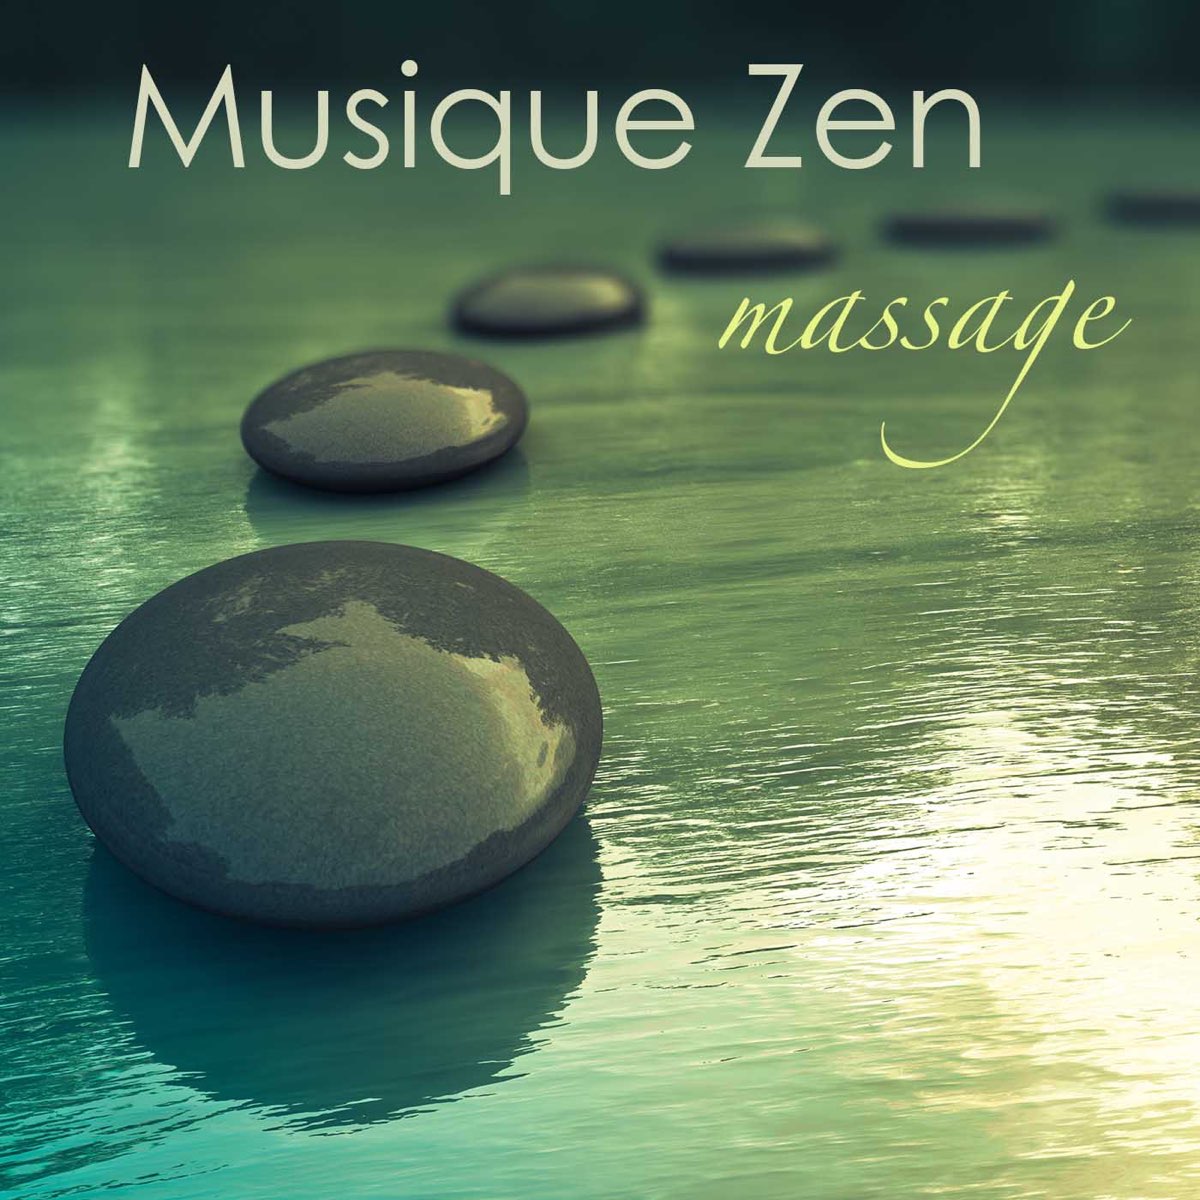 Musique zen massage: musique de fond pour harmonie, sérénité et